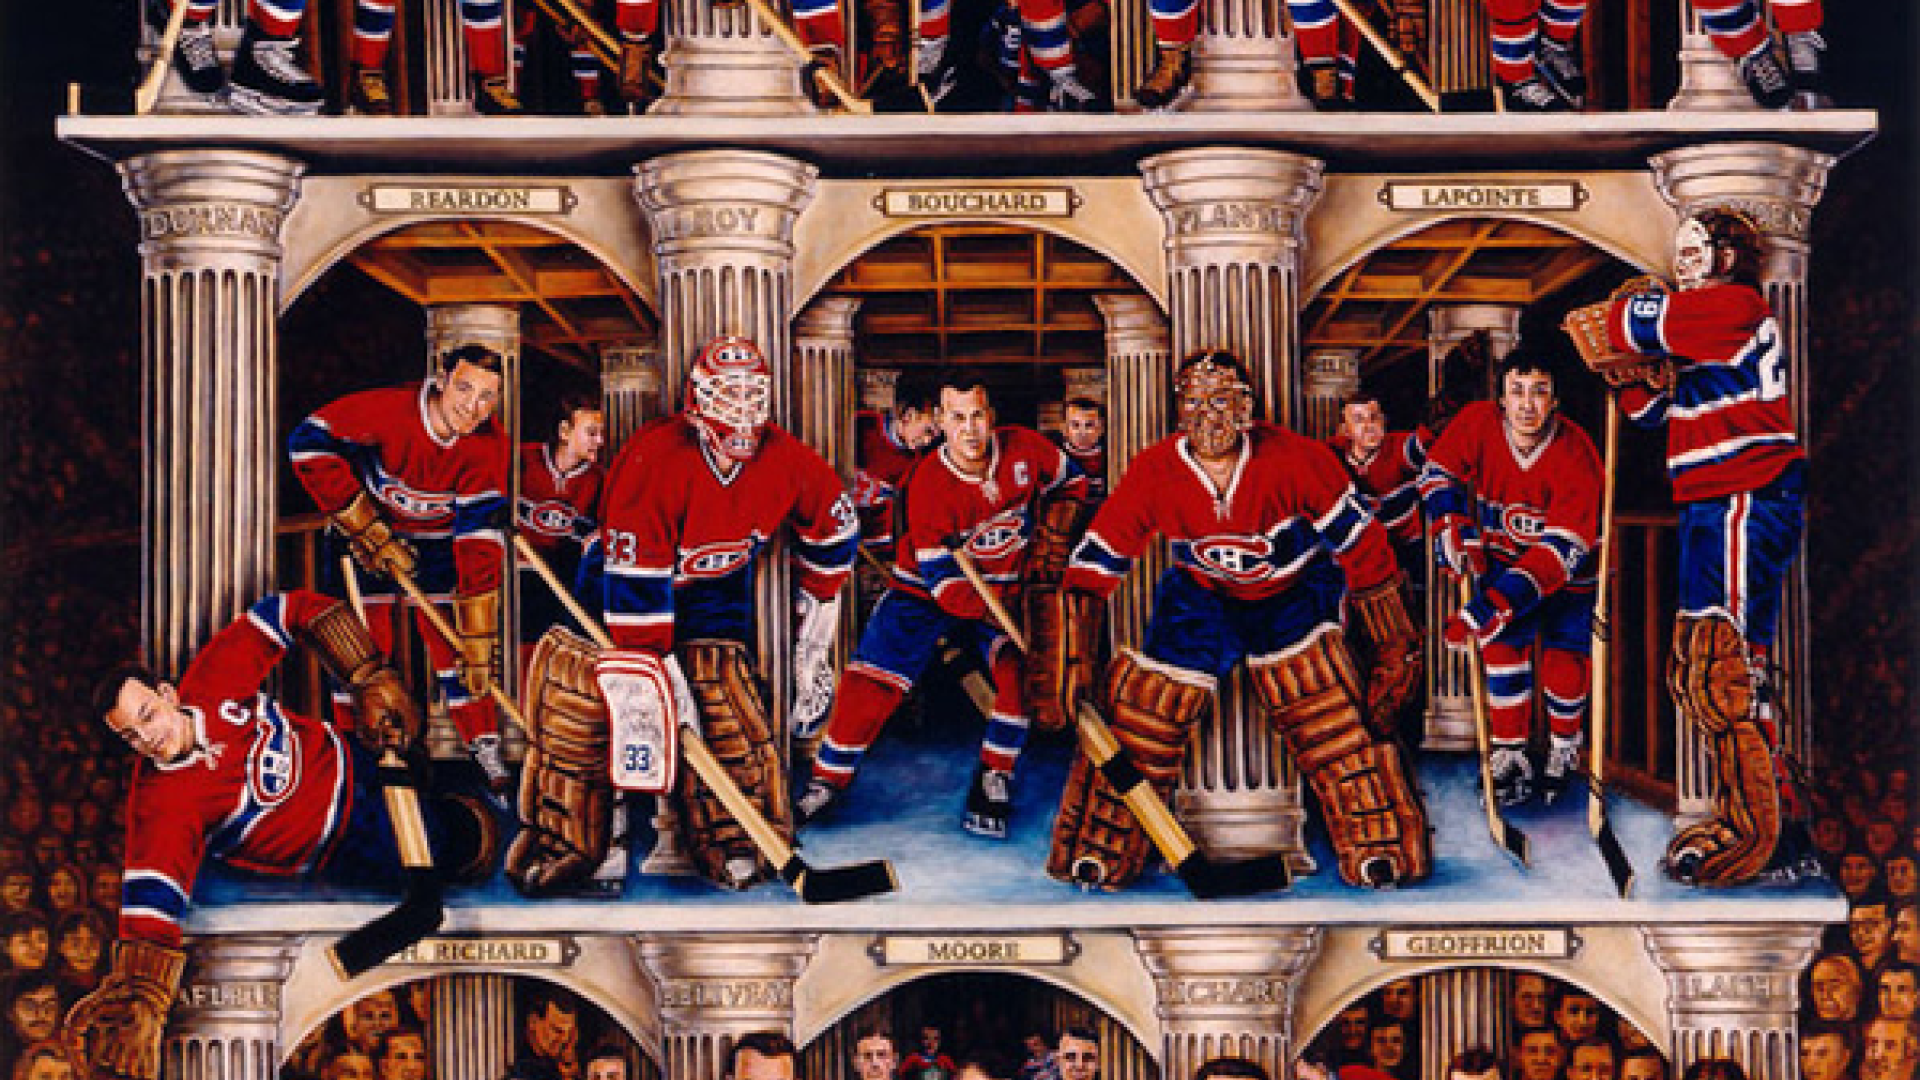 Joyeux Noel au Canadiens de Montreal et a tout leurs fan ...